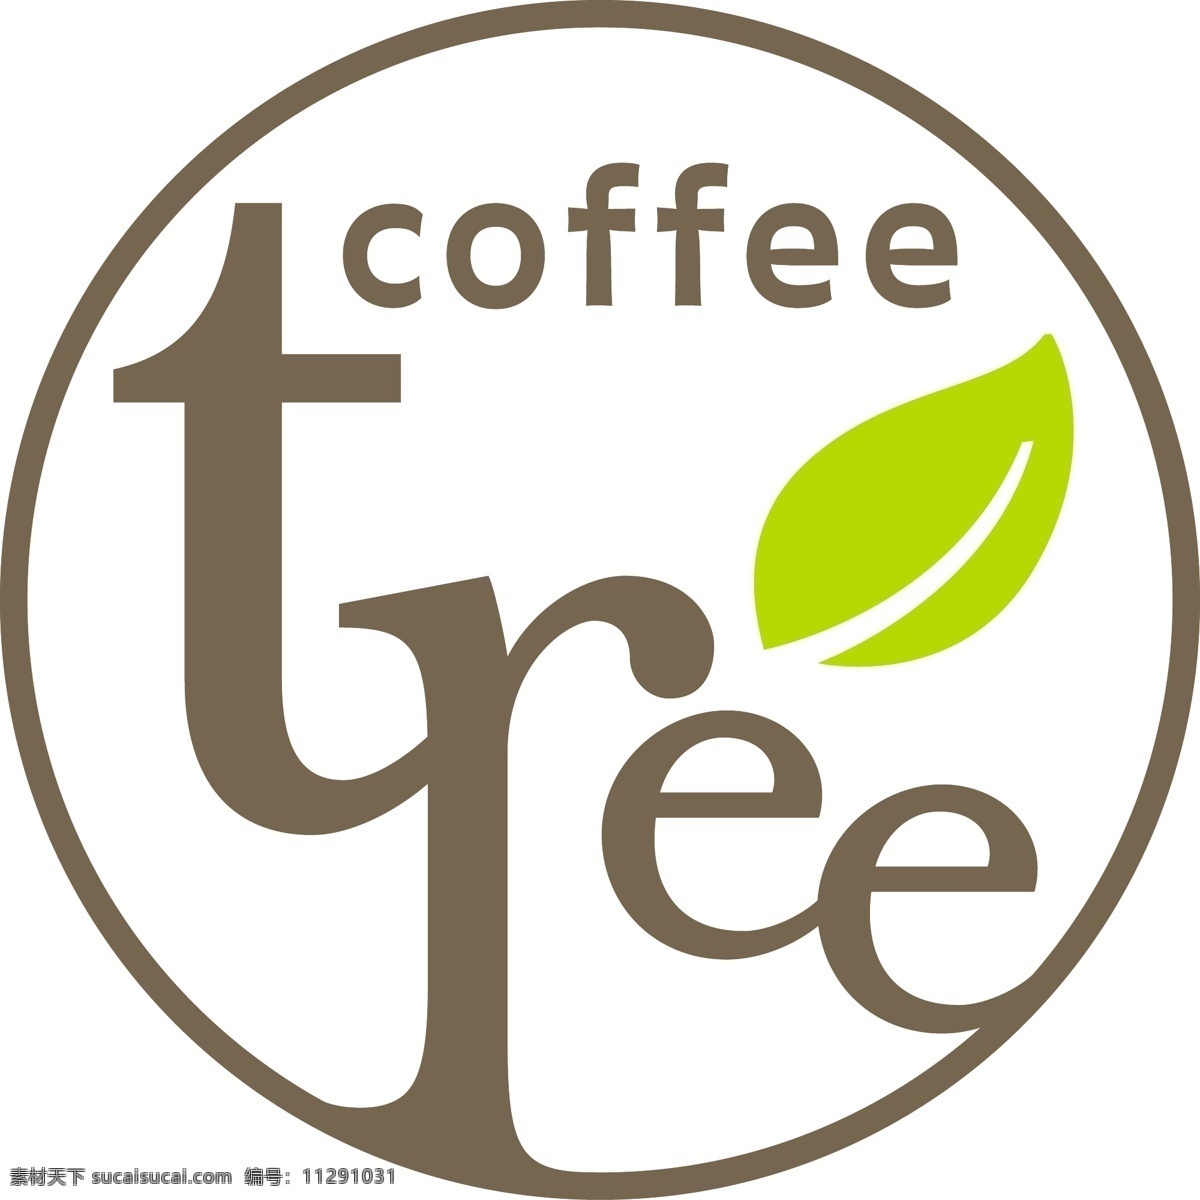 咖啡店 司 标 标识标志图标 企业 logo 标志 矢量图库 矢量 模板下载 咖啡店司标 咖啡树